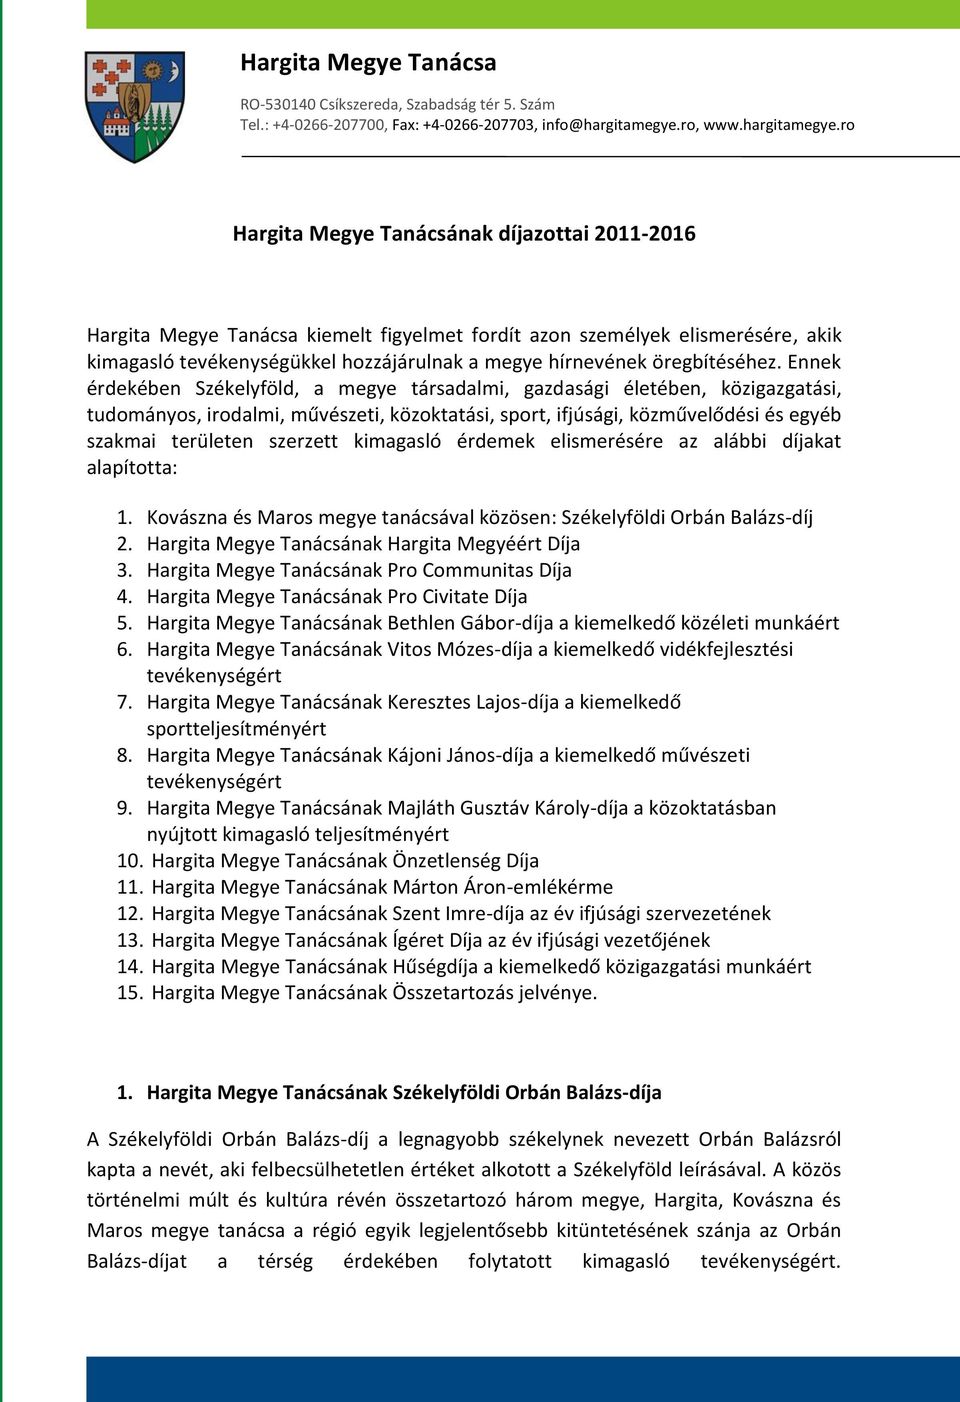 ro Hargita Megye Tanácsának díjazottai 2011-2016 kiemelt figyelmet fordít azon személyek elismerésére, akik kimagasló tevékenységükkel hozzájárulnak a megye hírnevének öregbítéséhez.